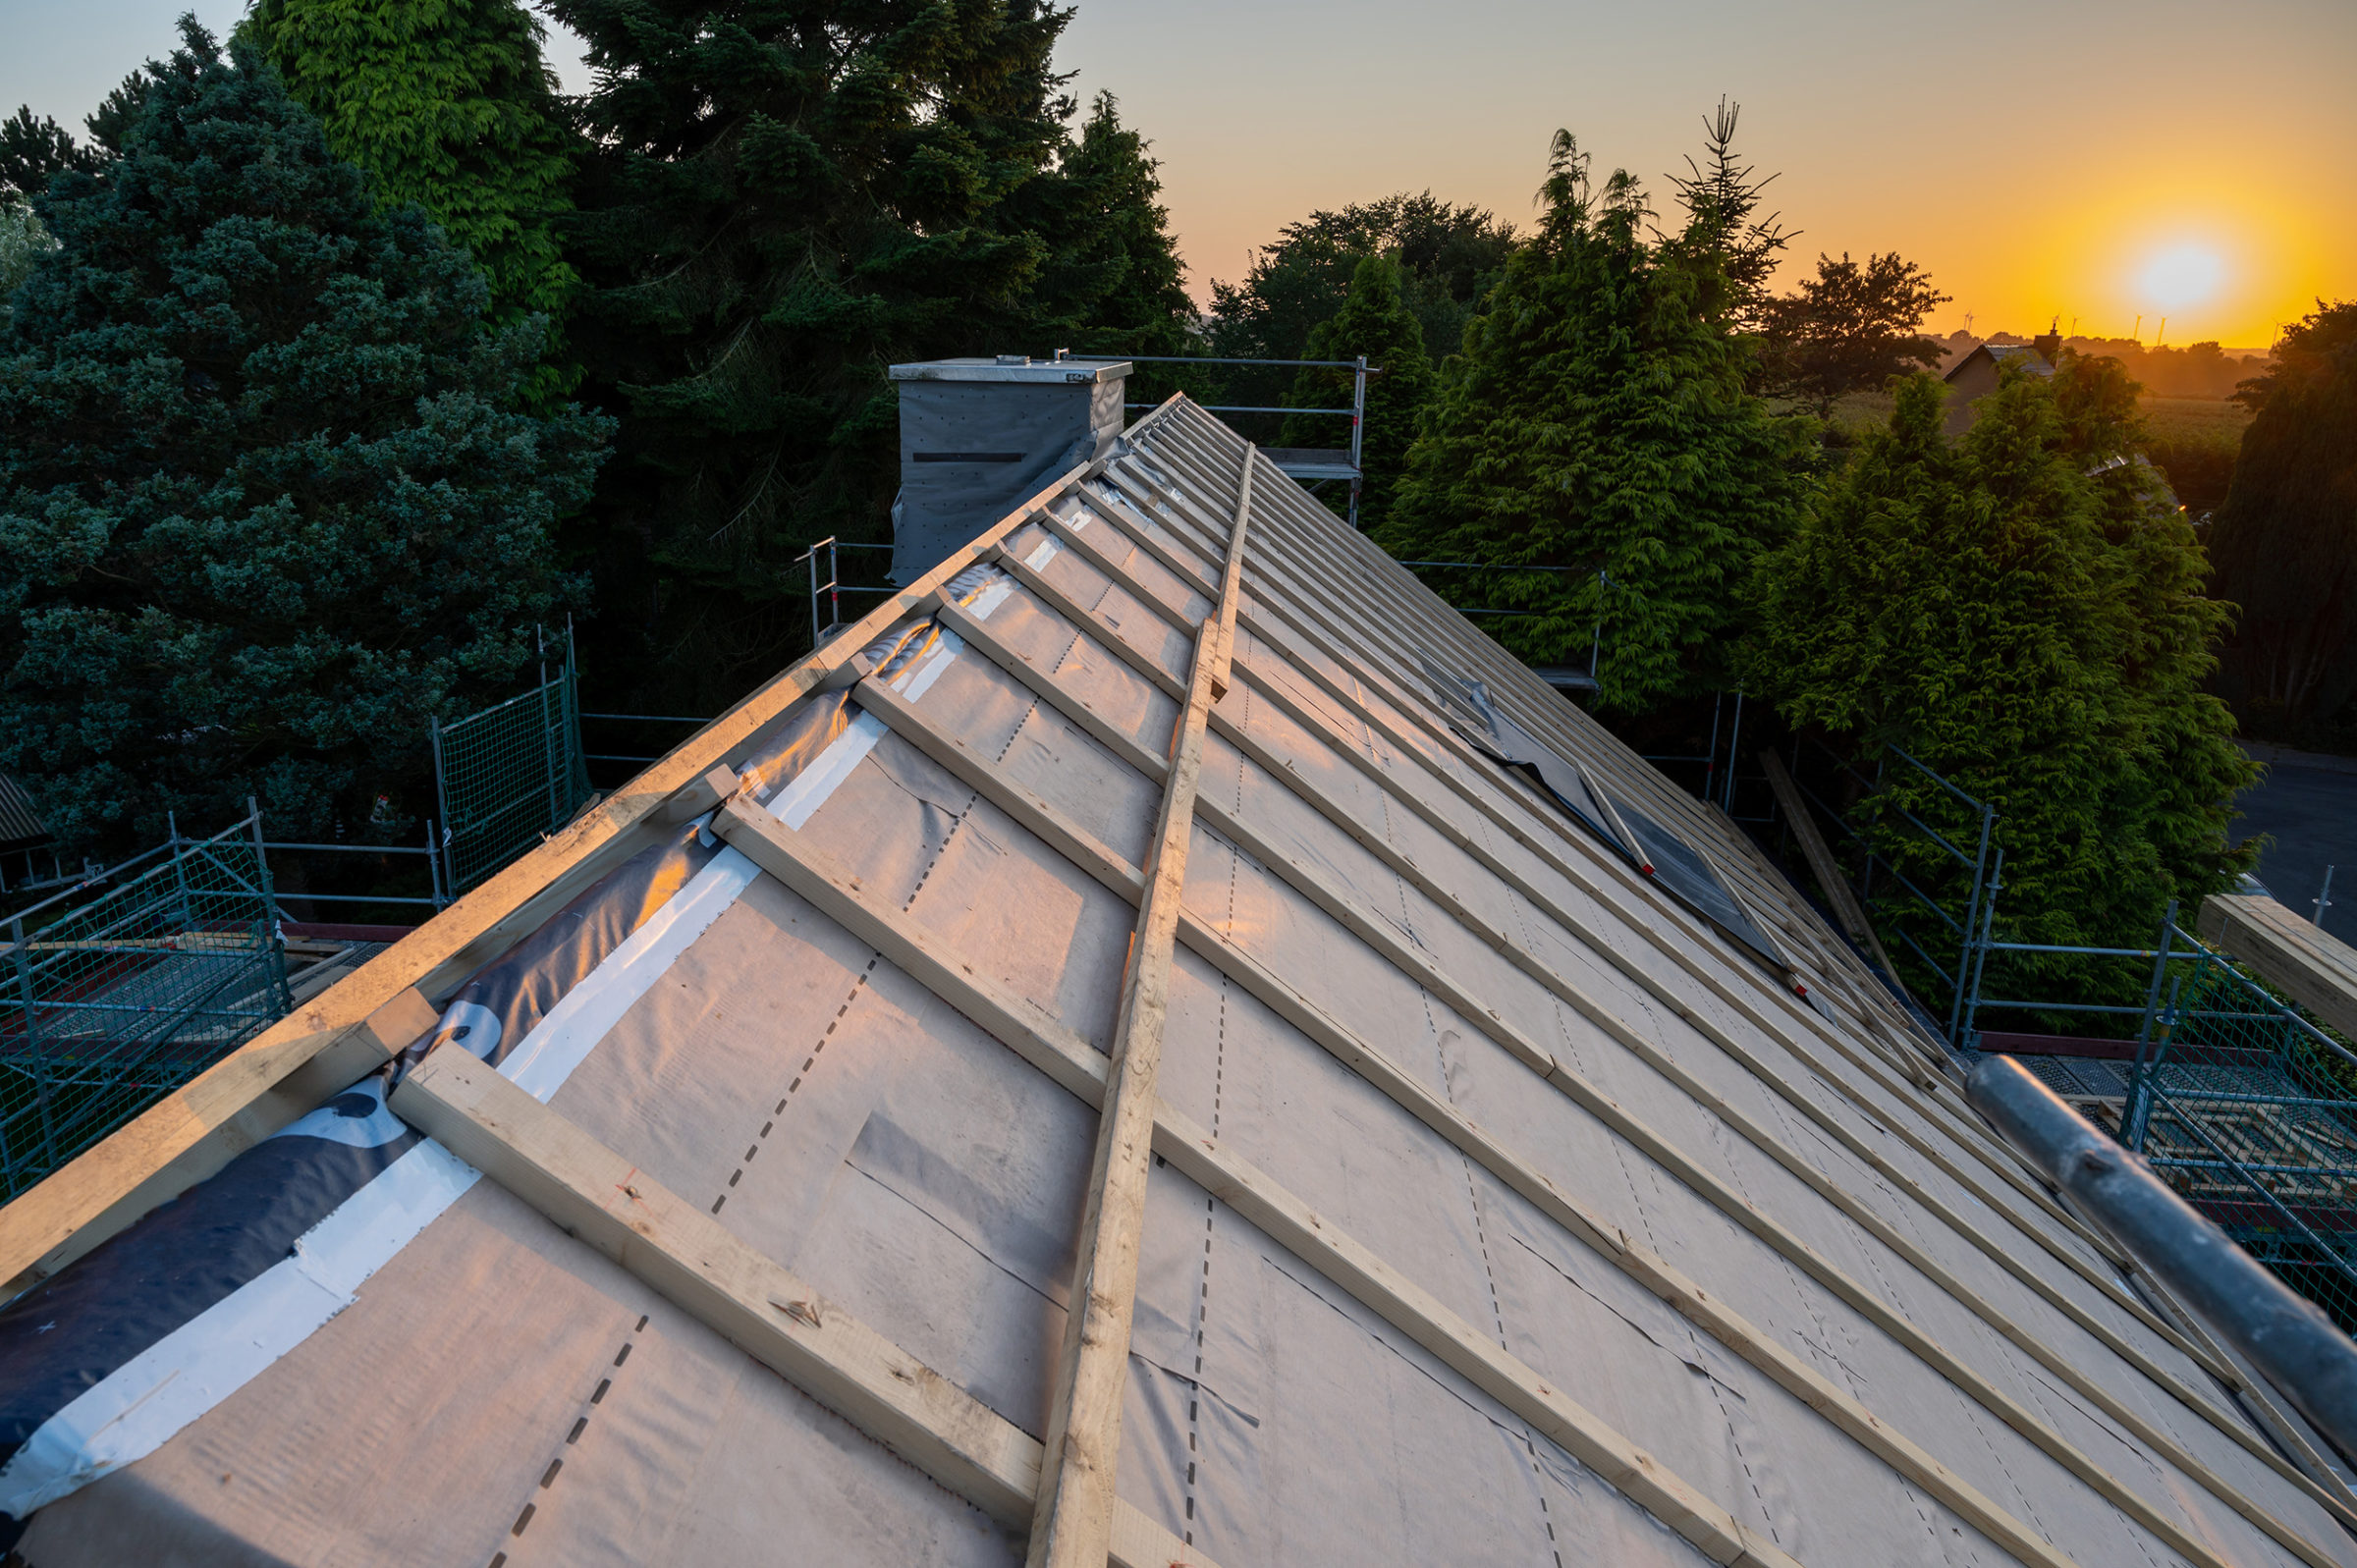 Ungedecktes Dach mit Holzbalken im Sonnenuntergang. Im Hintergrund sind Baeume.